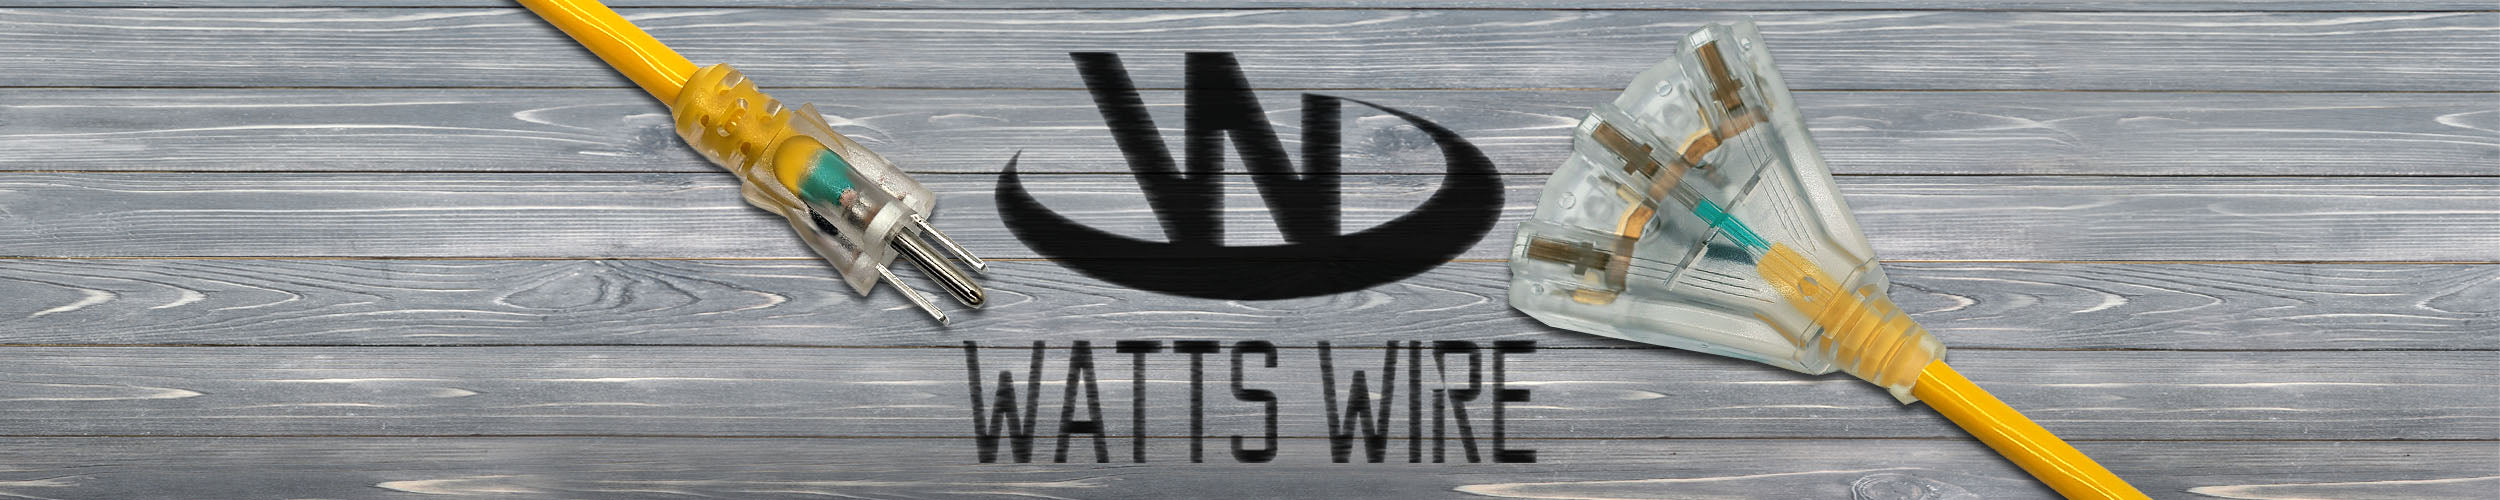 outdoor extension cord heavy duty Watt's Wire